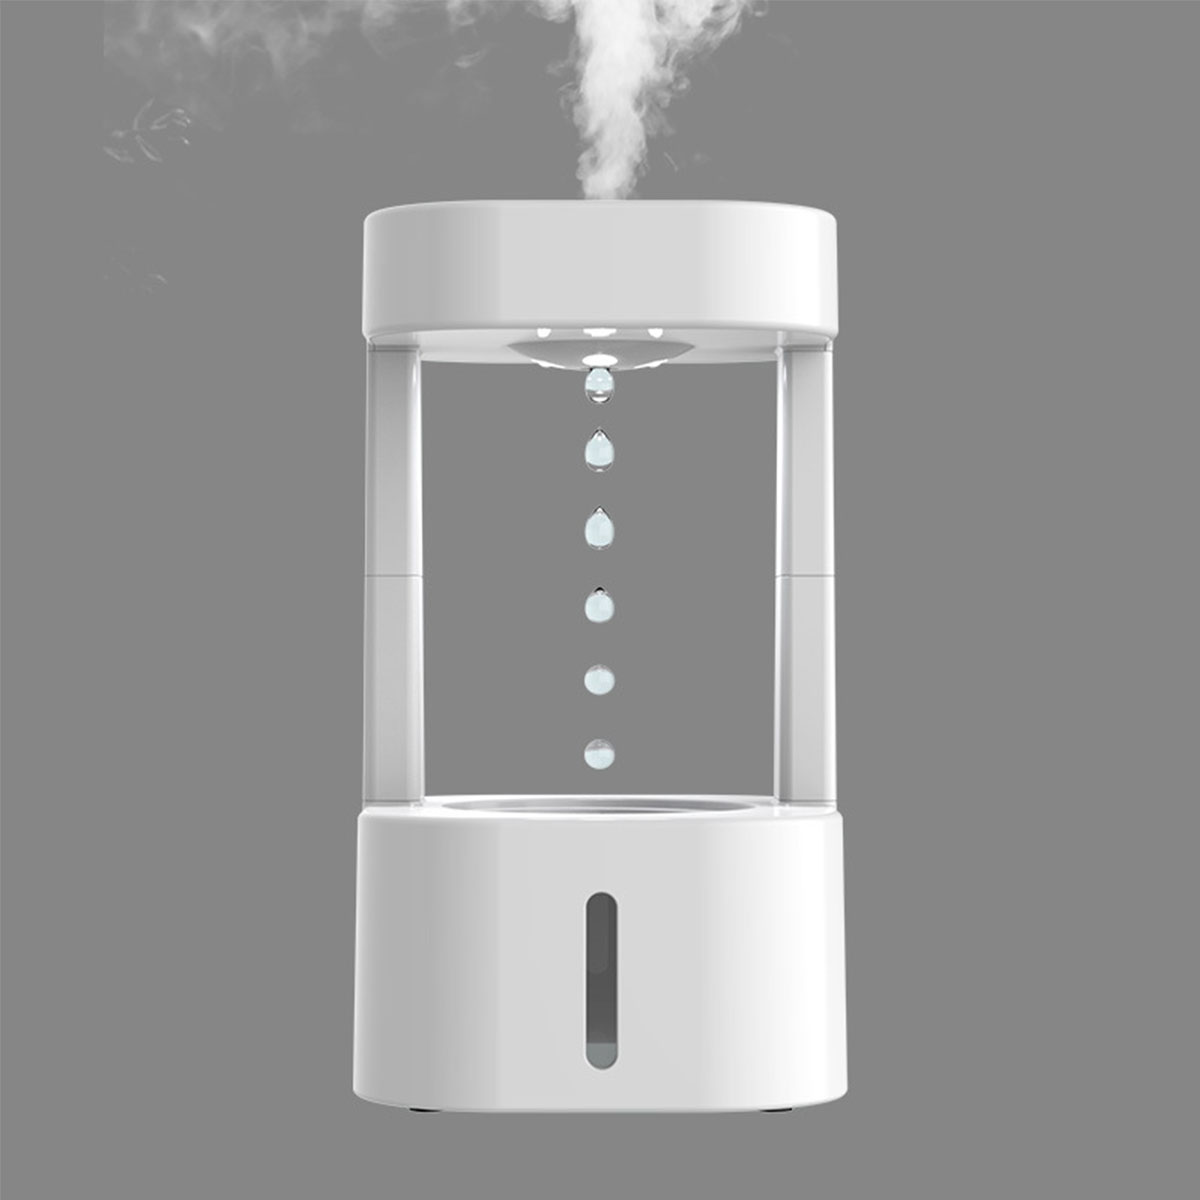 Anti-Schwerkraft Luftbefeuchter (Raumgröße: m²) Leise, Luftbefeuchter 10 Weiß Nachtleuchte BRIGHTAKE Aromatherapie, -